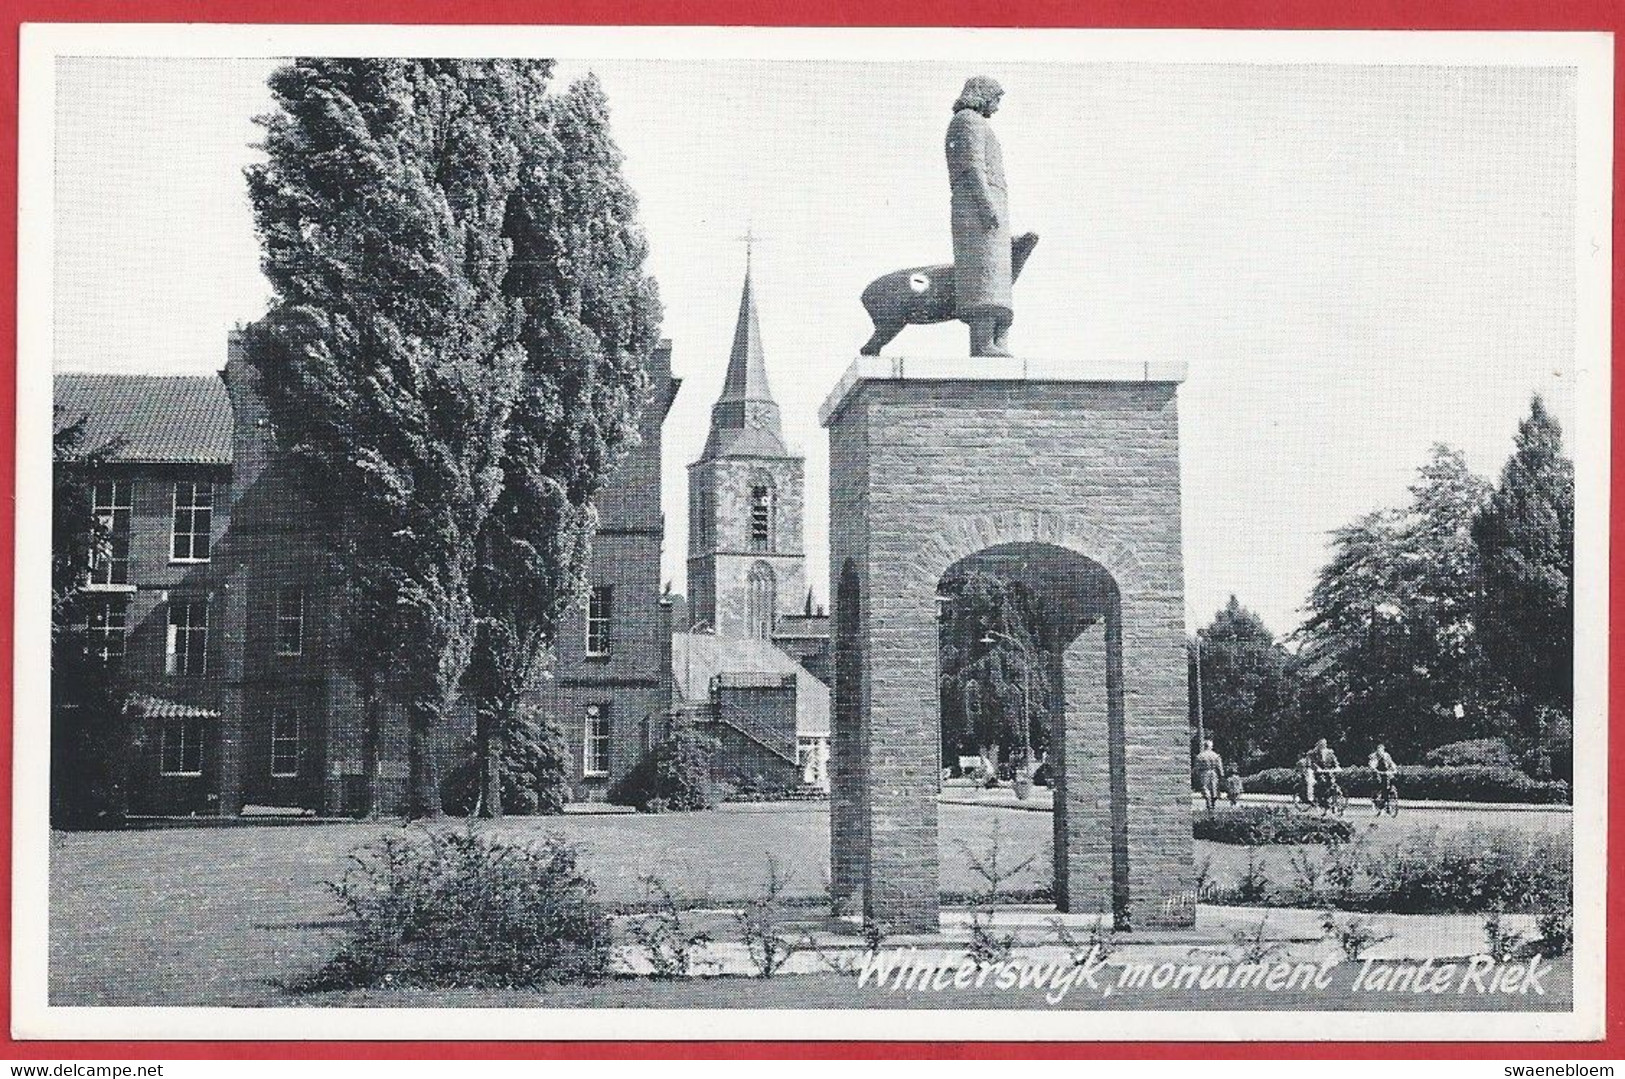 NL.- Winterswijk, Monument Tante Riek. Uitgave: F.A. Ruepert, Warenhuis. Nr. 24749. Ongelopen. - Winterswijk